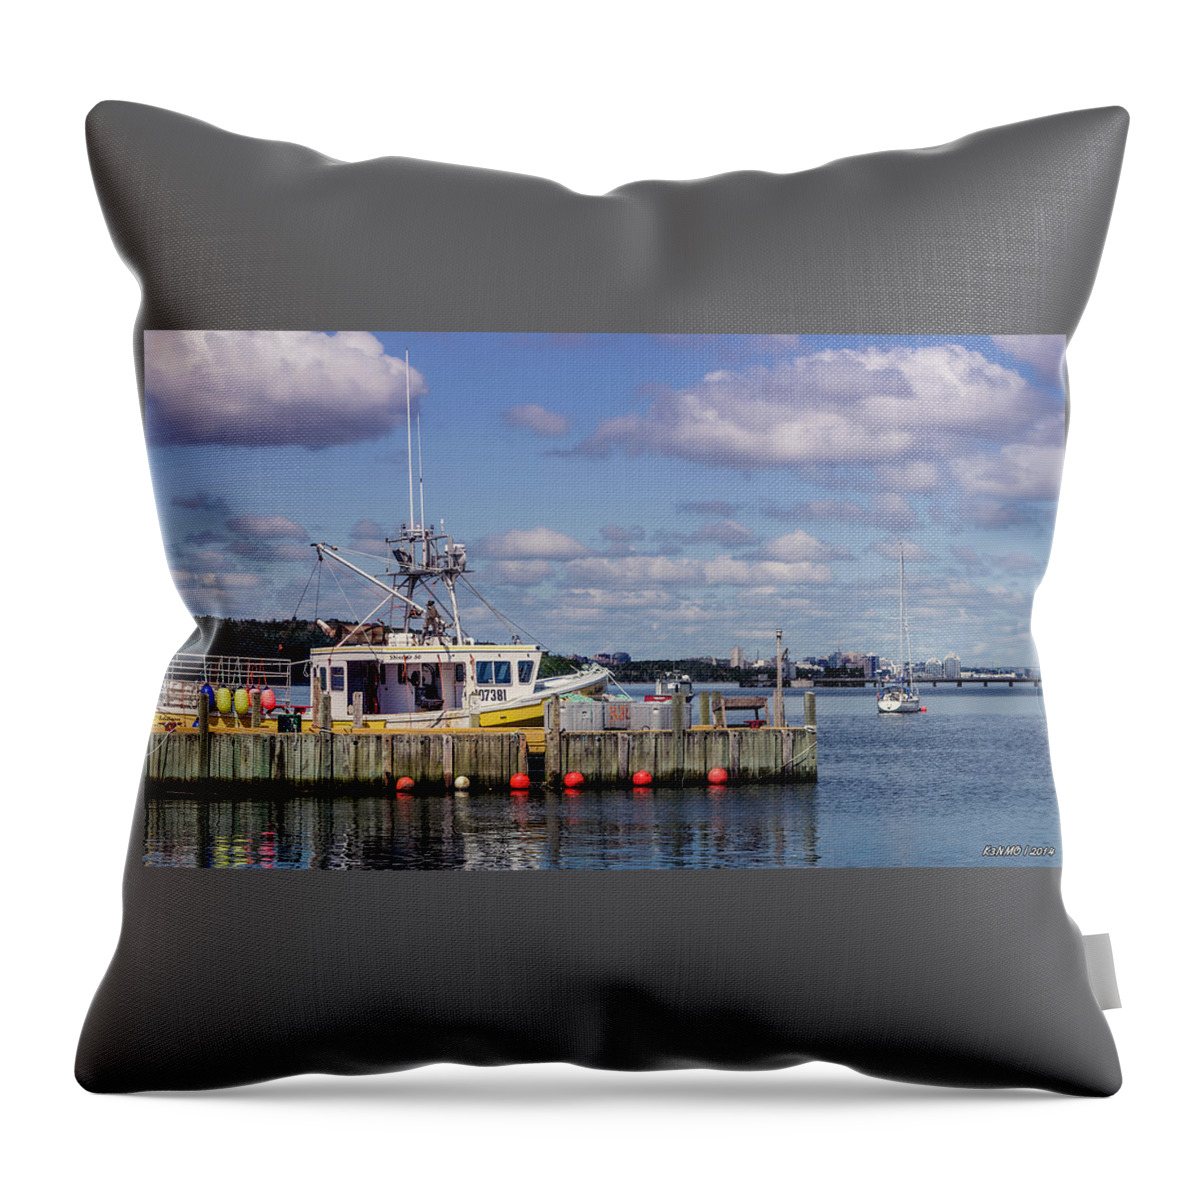 Atlantic Ocean Throw Pillow featuring the digital art Serene Day Fisherman's Cove by Ken Morris